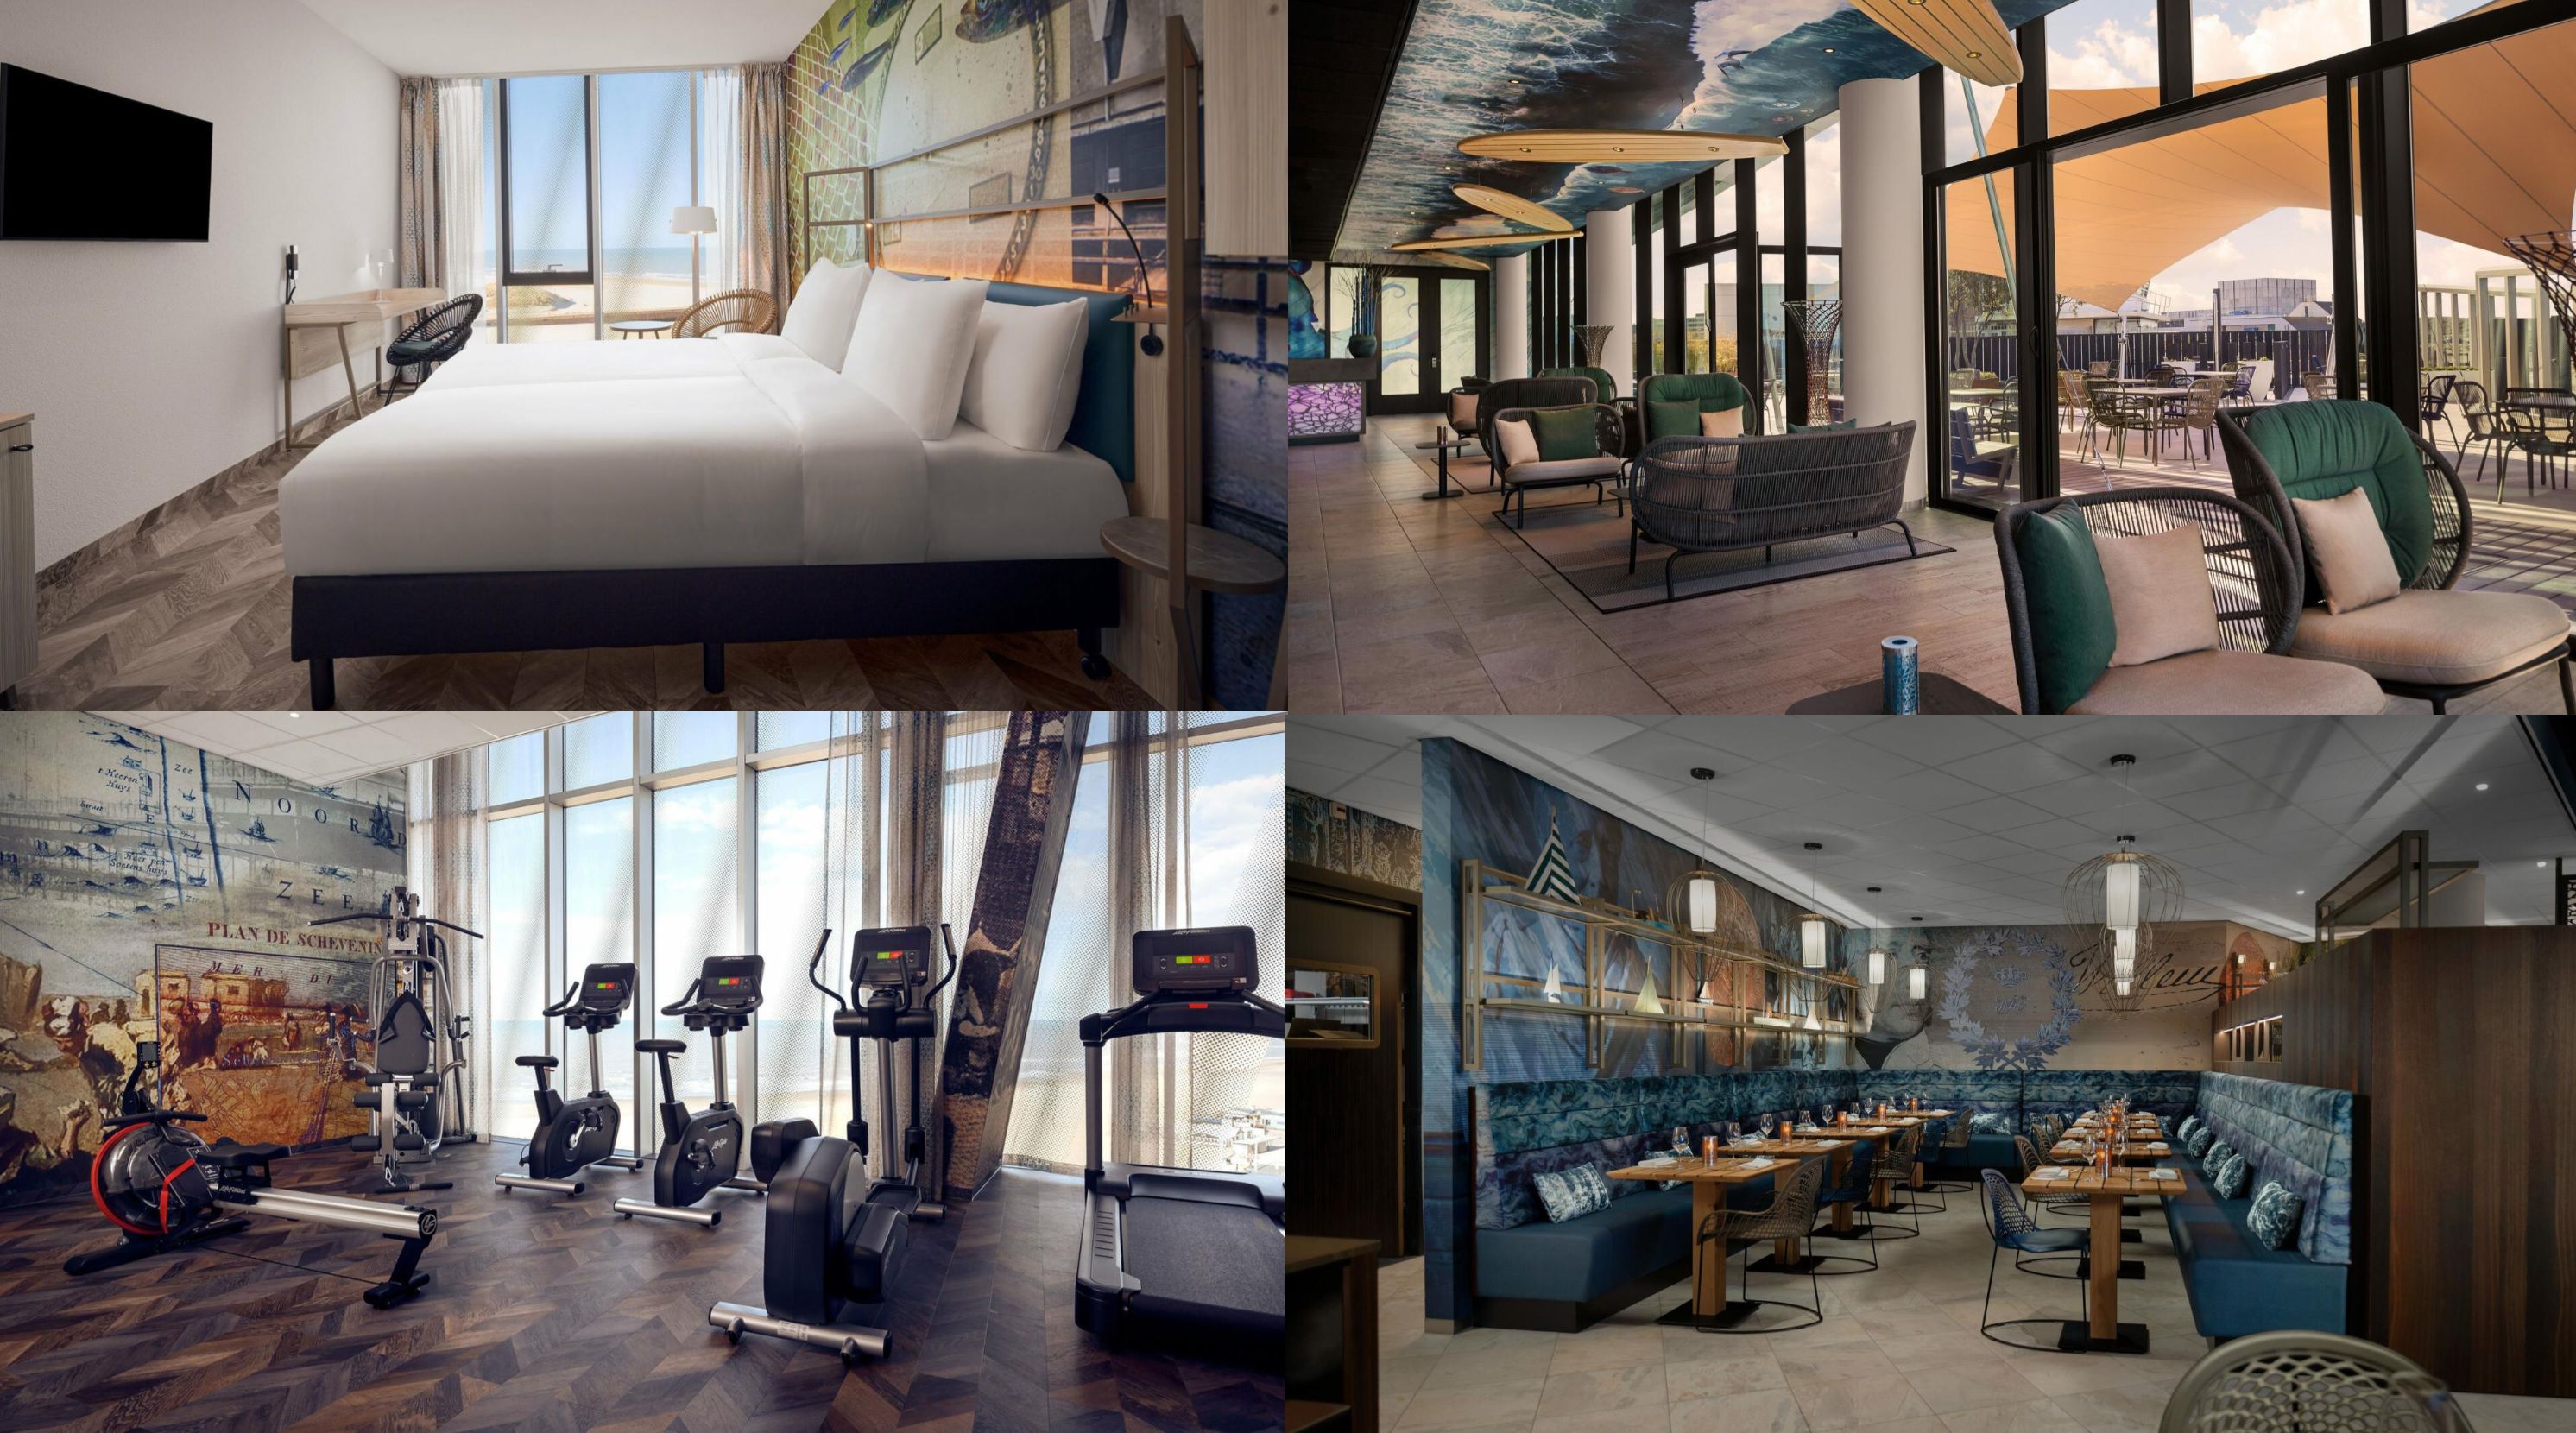 ÜN im neuen Inntel Hotels Den Haag Marina Beach mit Frühstück + Wellness und Welcomedrink ab 59,50€